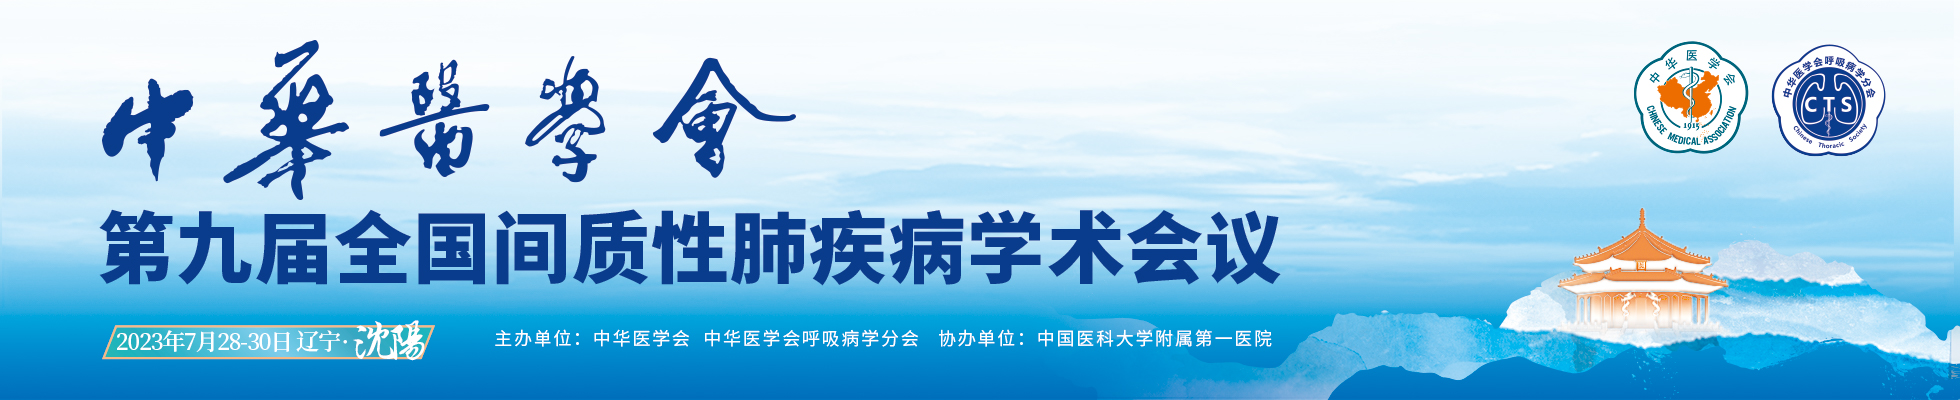 中华医学会第九届全国间质性肺疾病学术会议